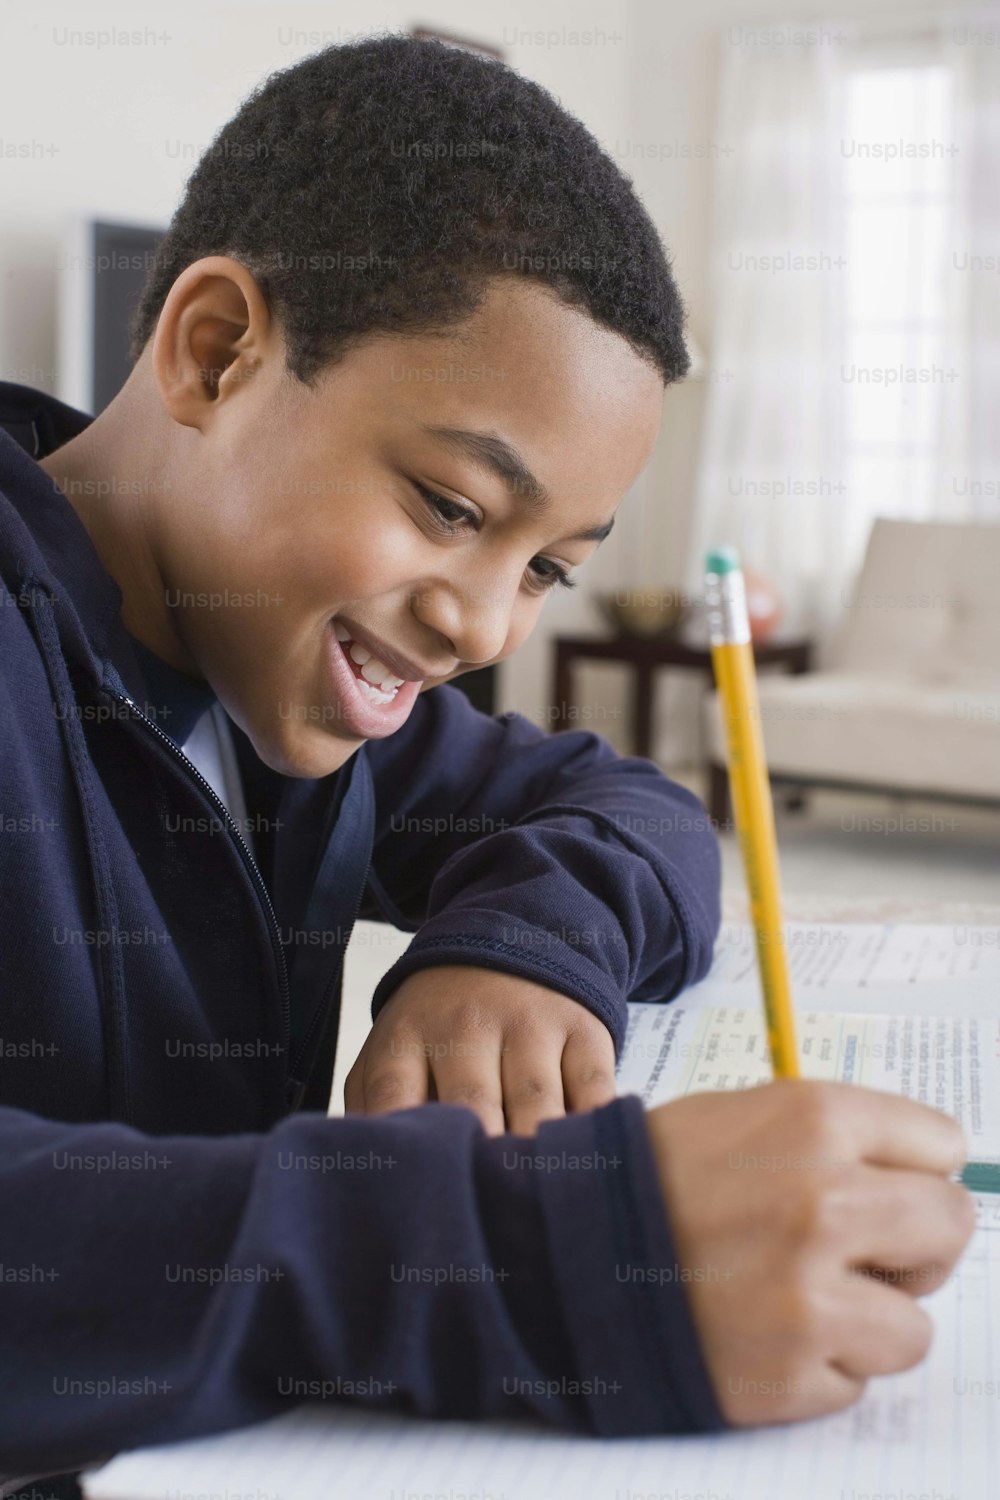 Ein kleiner Junge lächelt, während er auf ein Blatt Papier schreibt